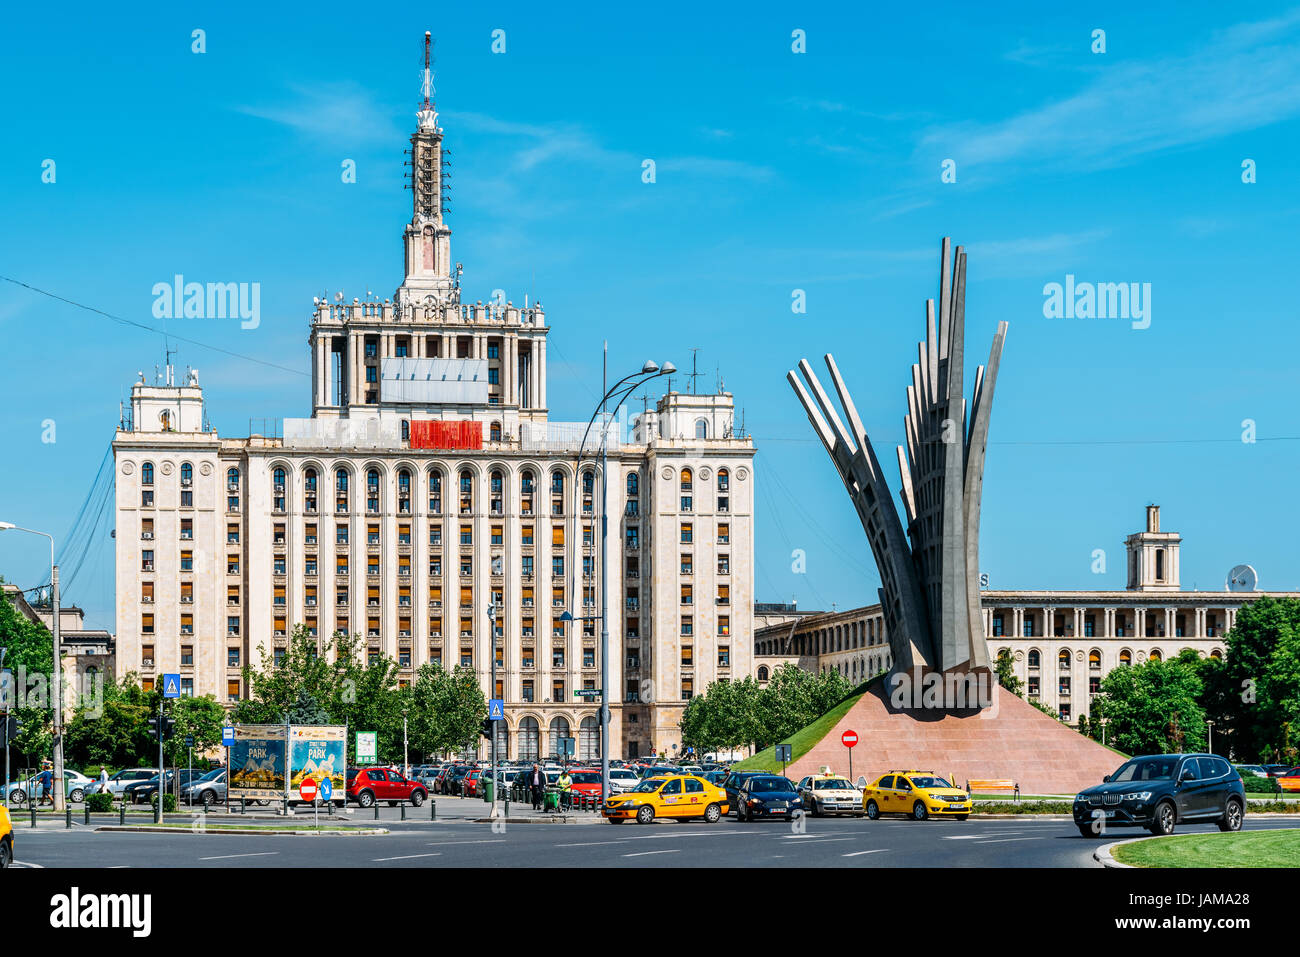 Bucarest, Roumanie - 24 MAI 2017 : Casa place Presei Libere (Maison de la presse libre) est un bâtiment de Bucarest, le plus haut de la ville entre 1956 et 2 Banque D'Images